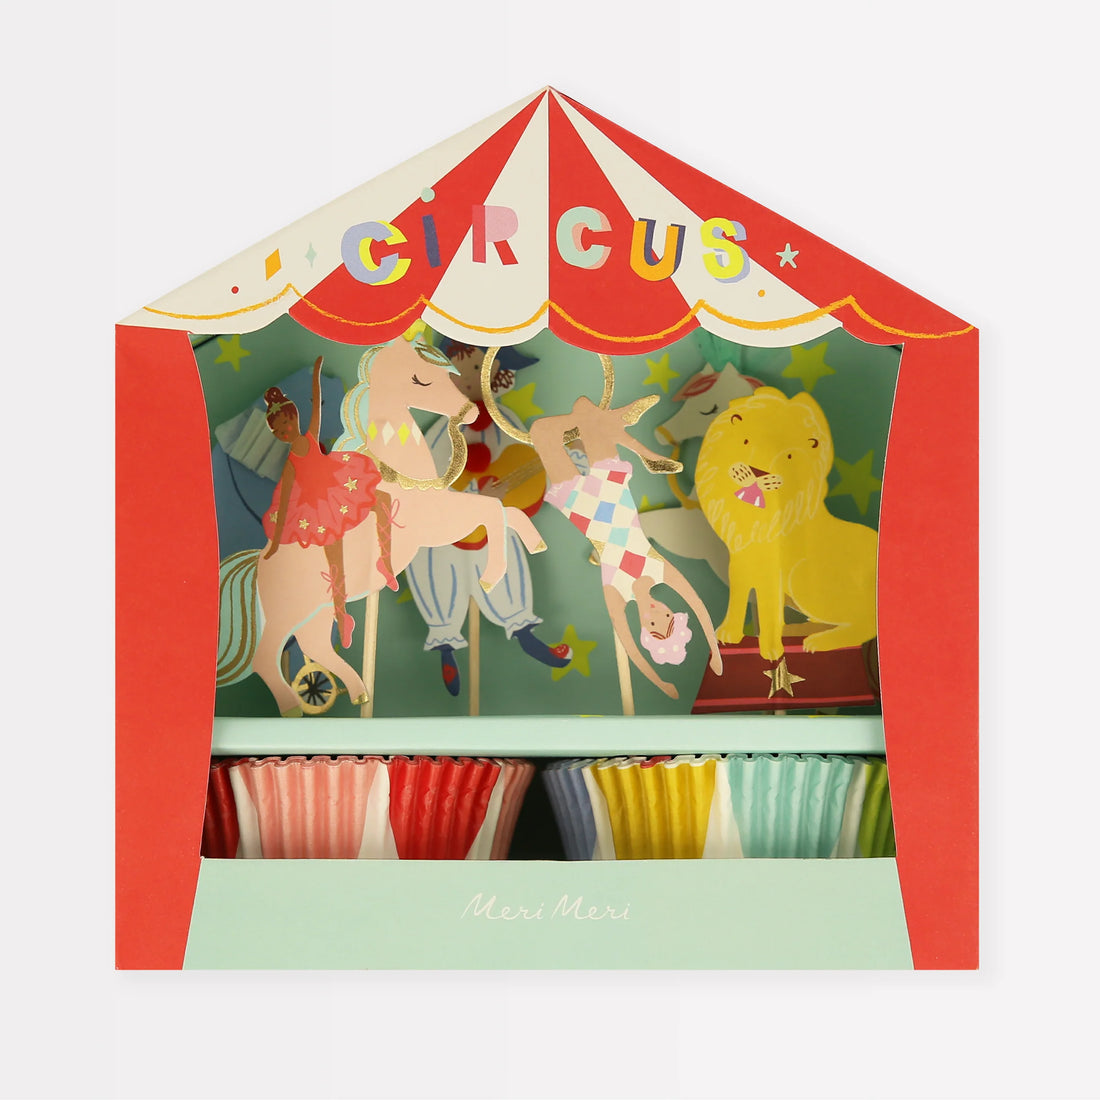 Kreieren Sie mit unserem Cupcake-Set die perfekten Leckereien zum Thema Zirkus